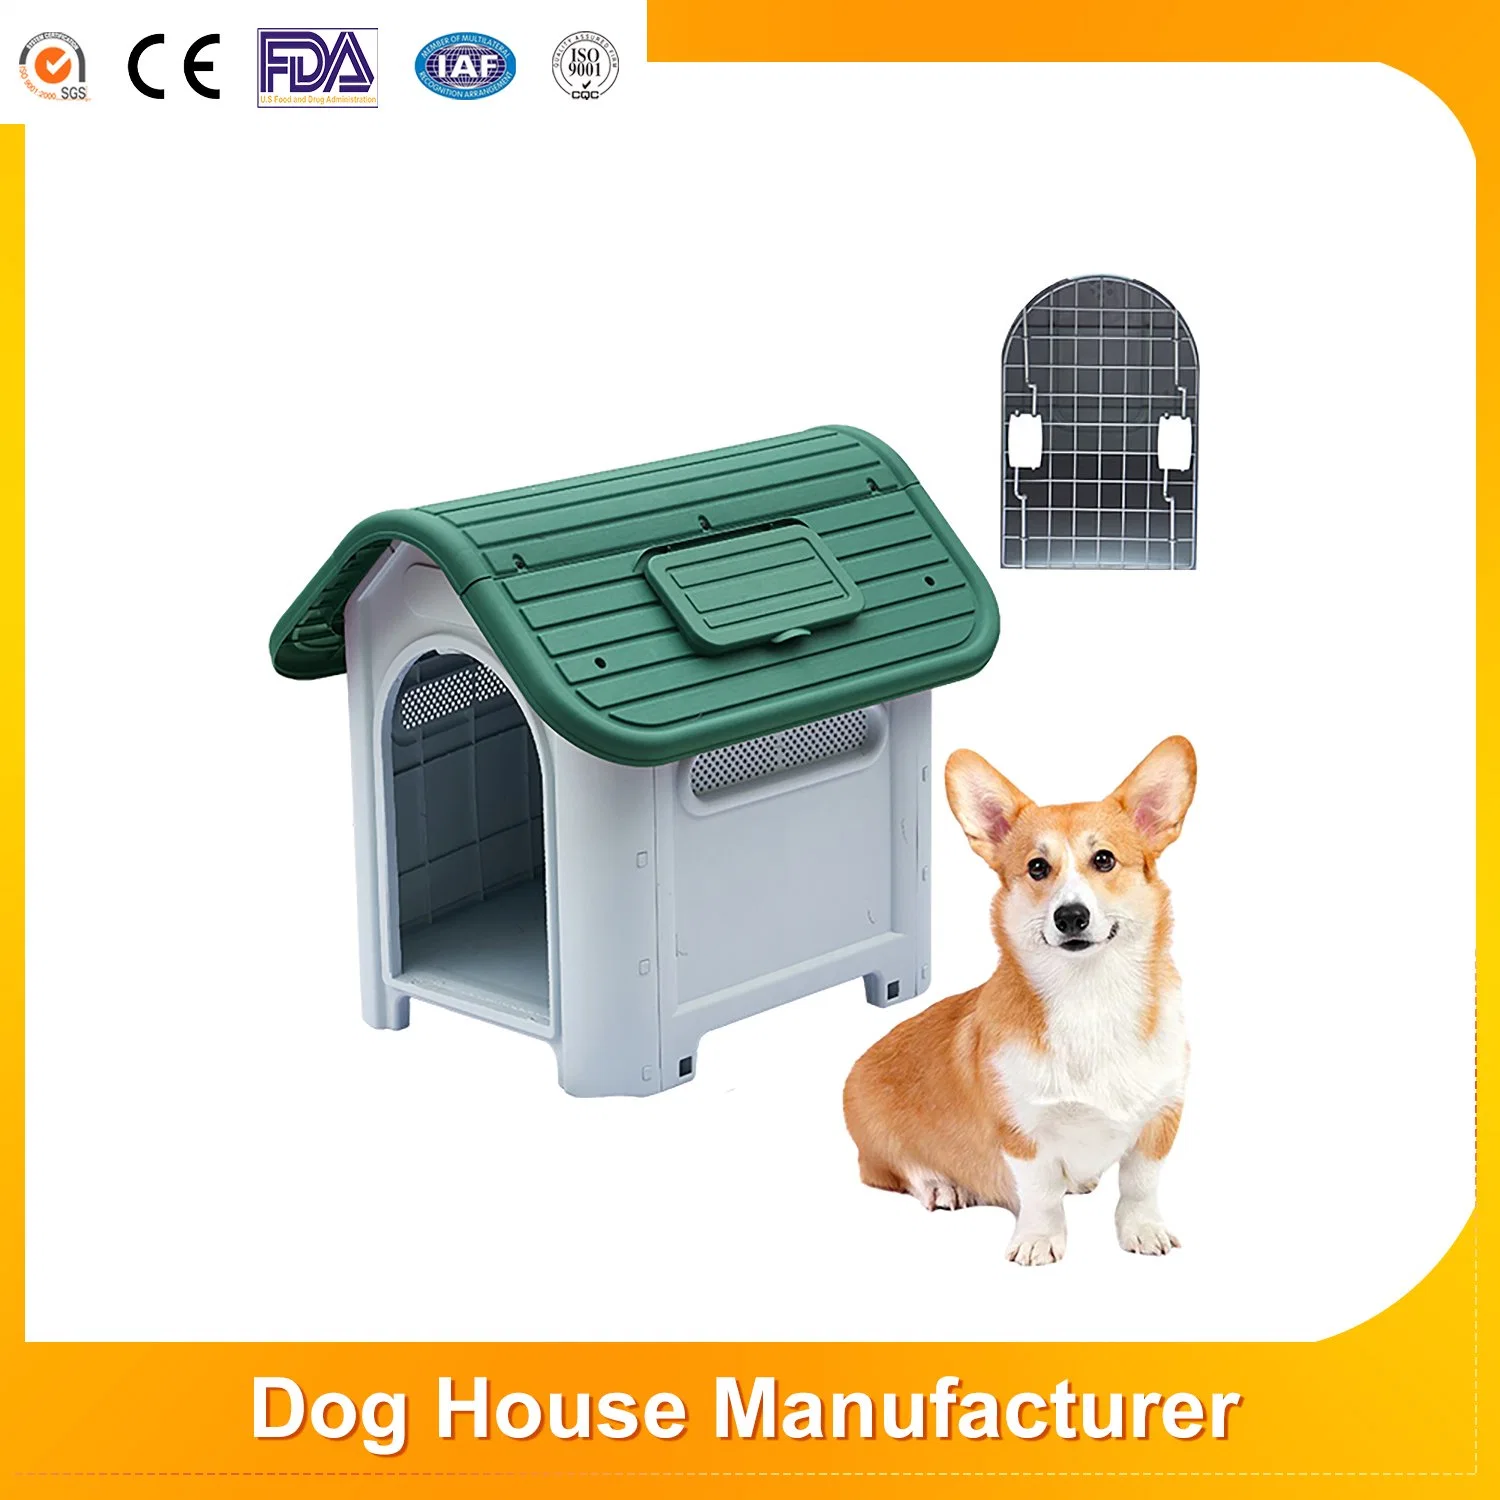 Impermeabilidade ventile inodoro disponibilidade para todas as estações Cat Kennel Dog House amovível Shelter Cãozinho Interior / Exterior Custom Modern Luxury Plastic Dog House